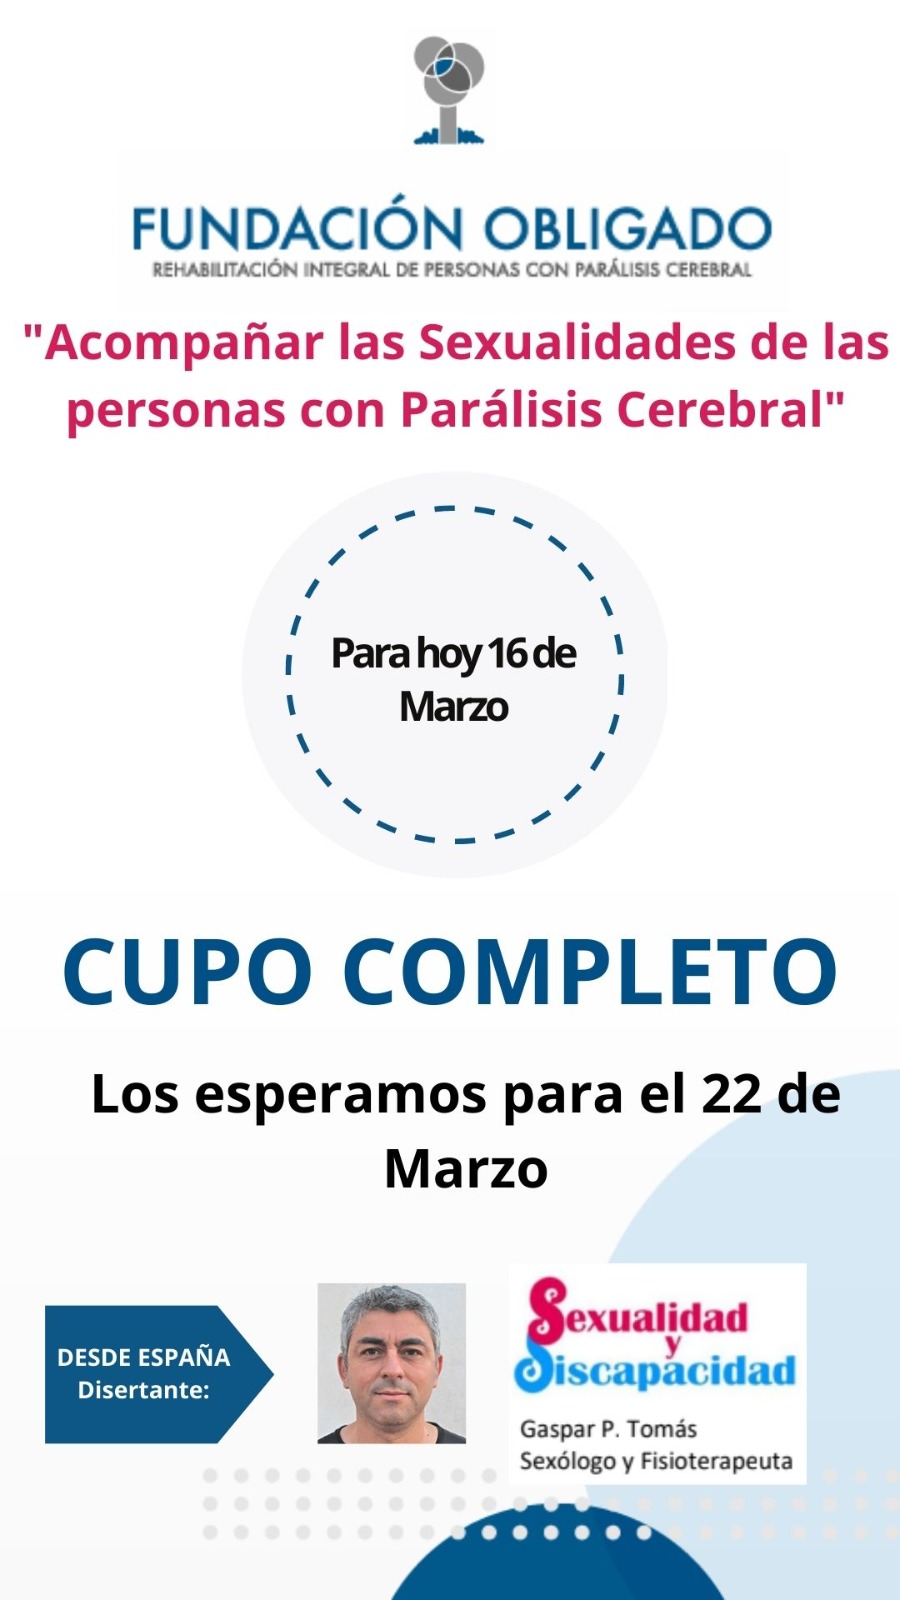 Ponencia "Acompañar las sexualidades de las personas con Parálisis Cerebral" - Fundación OBLIGADO (Argentina)